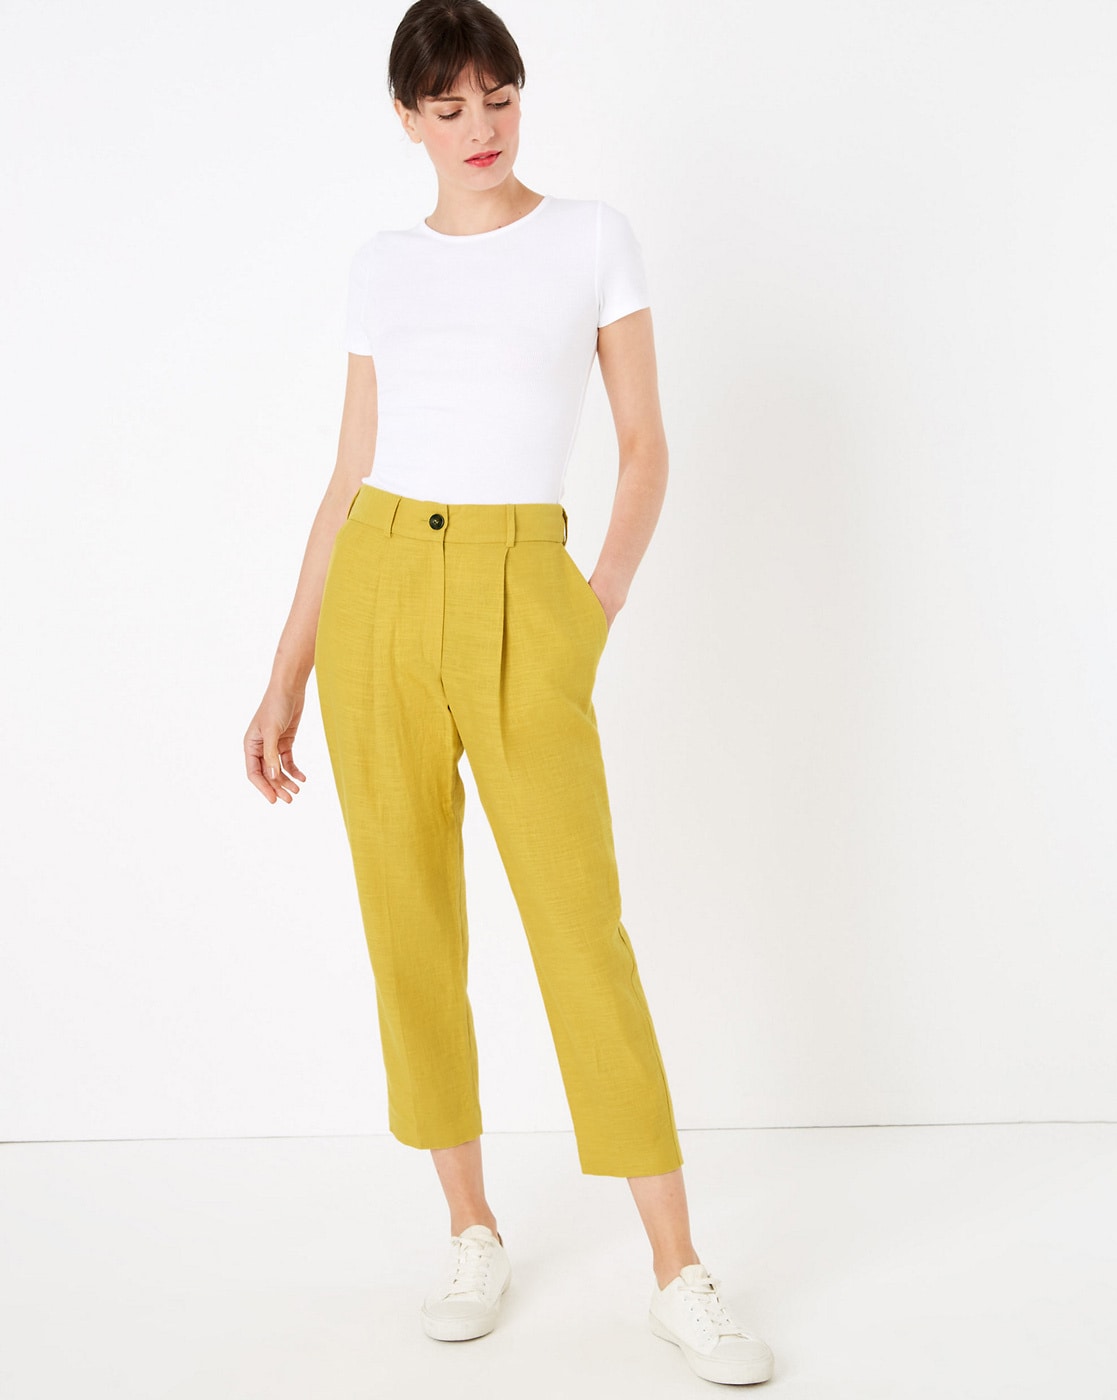 Alysi - Corduroy Sparkle Trousers: Yellow – ouimillie